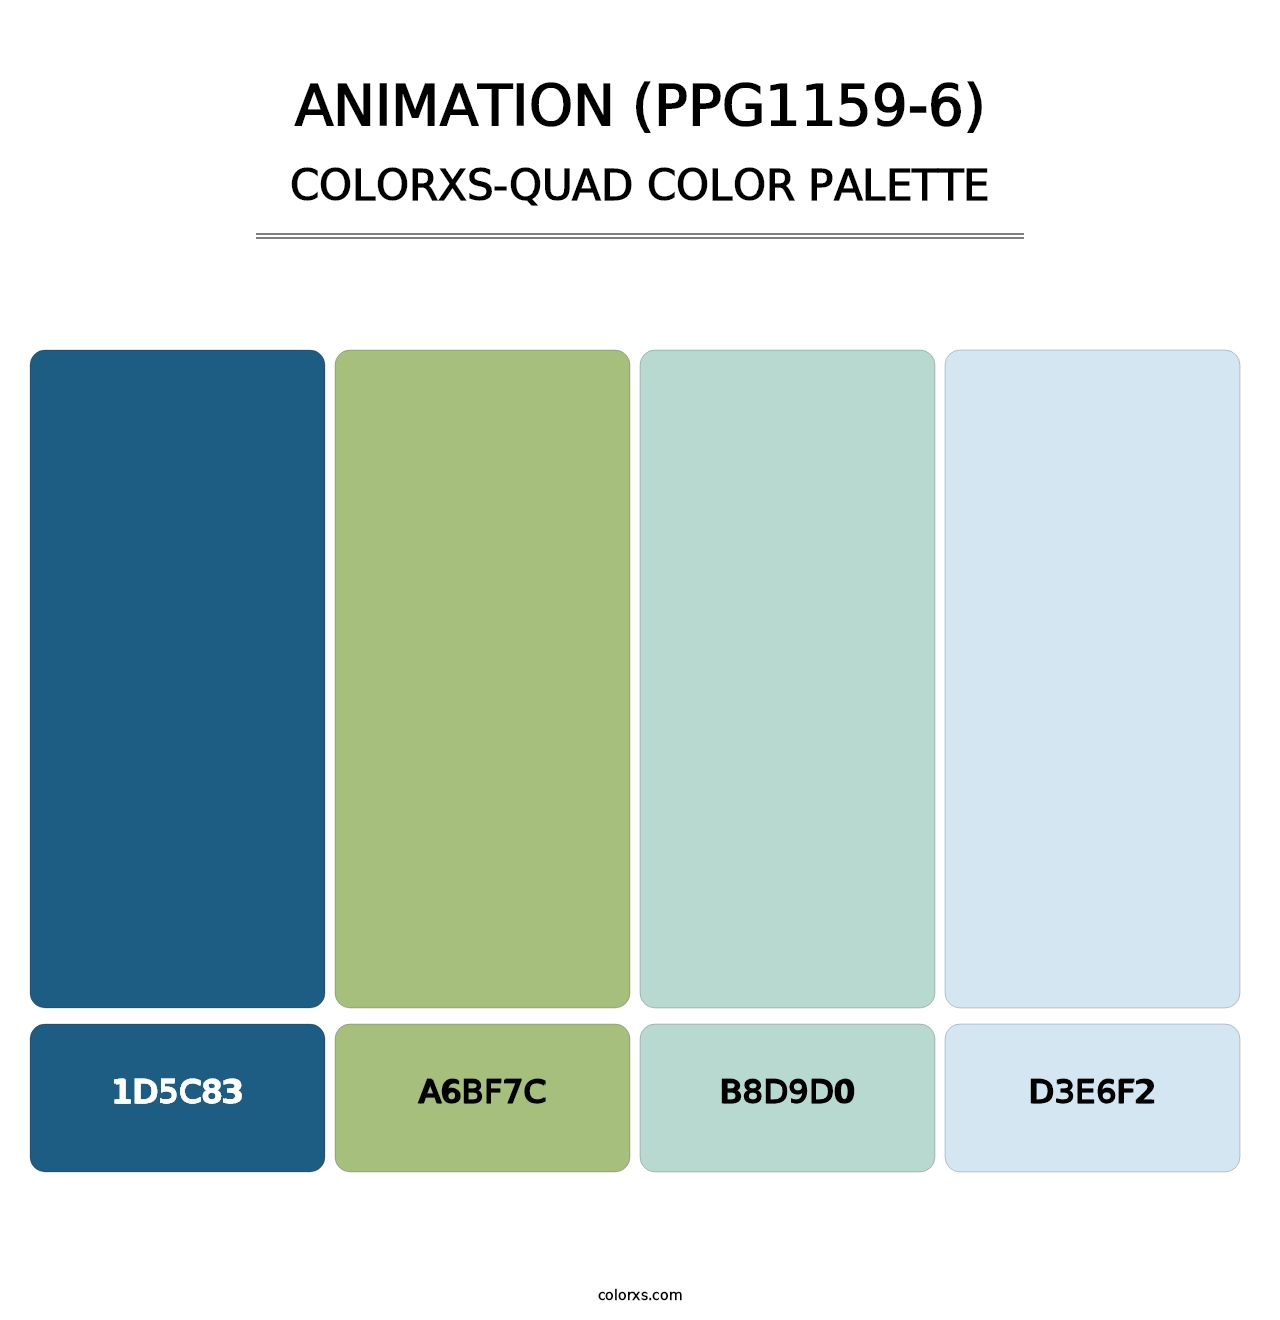 Animation (PPG1159-6) - Colorxs Quad Palette